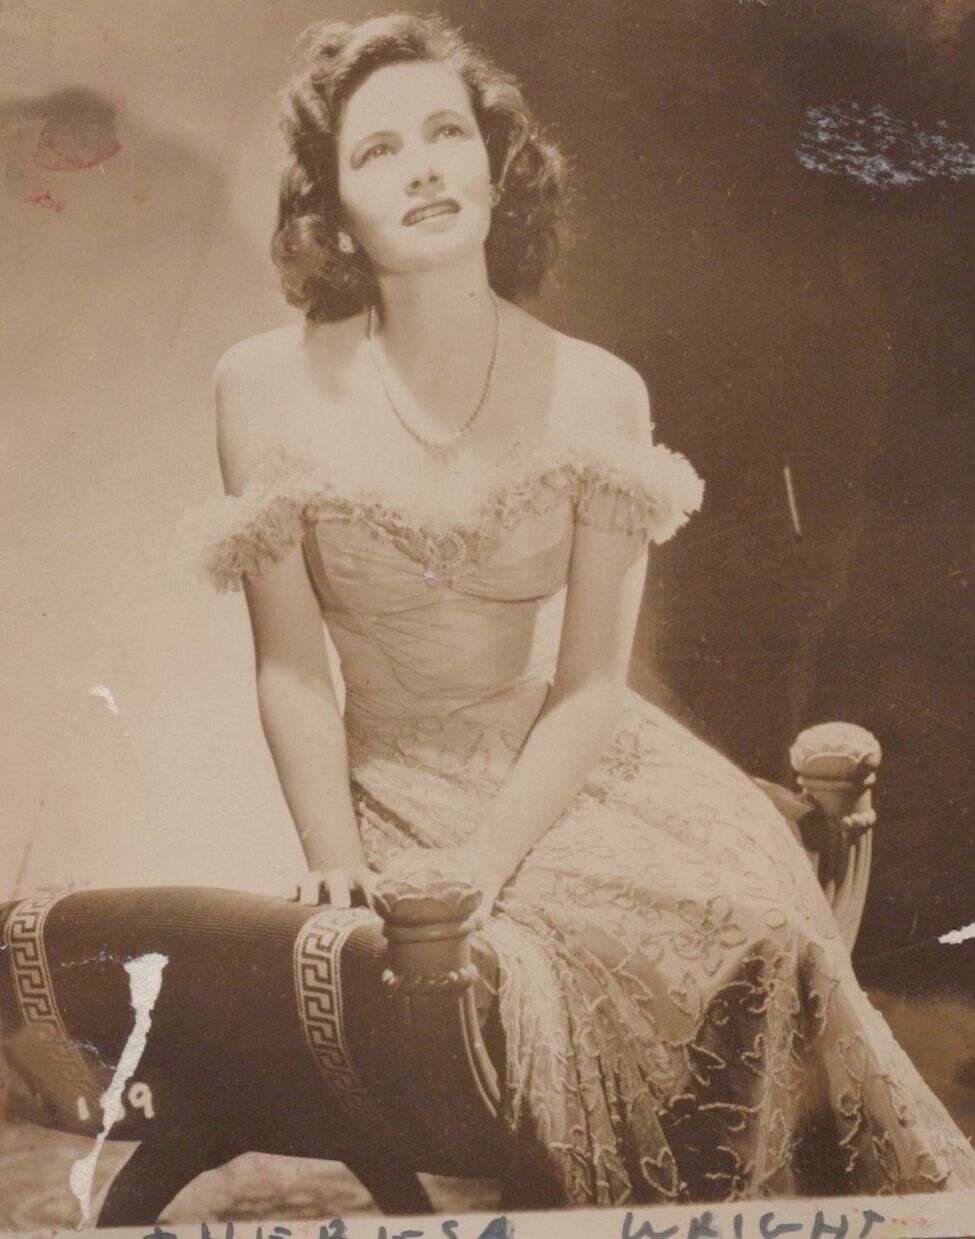 Theresa Wright (1940s) ❤ Hollywood Beauty - Stylish Pose Vintage Photo K 197